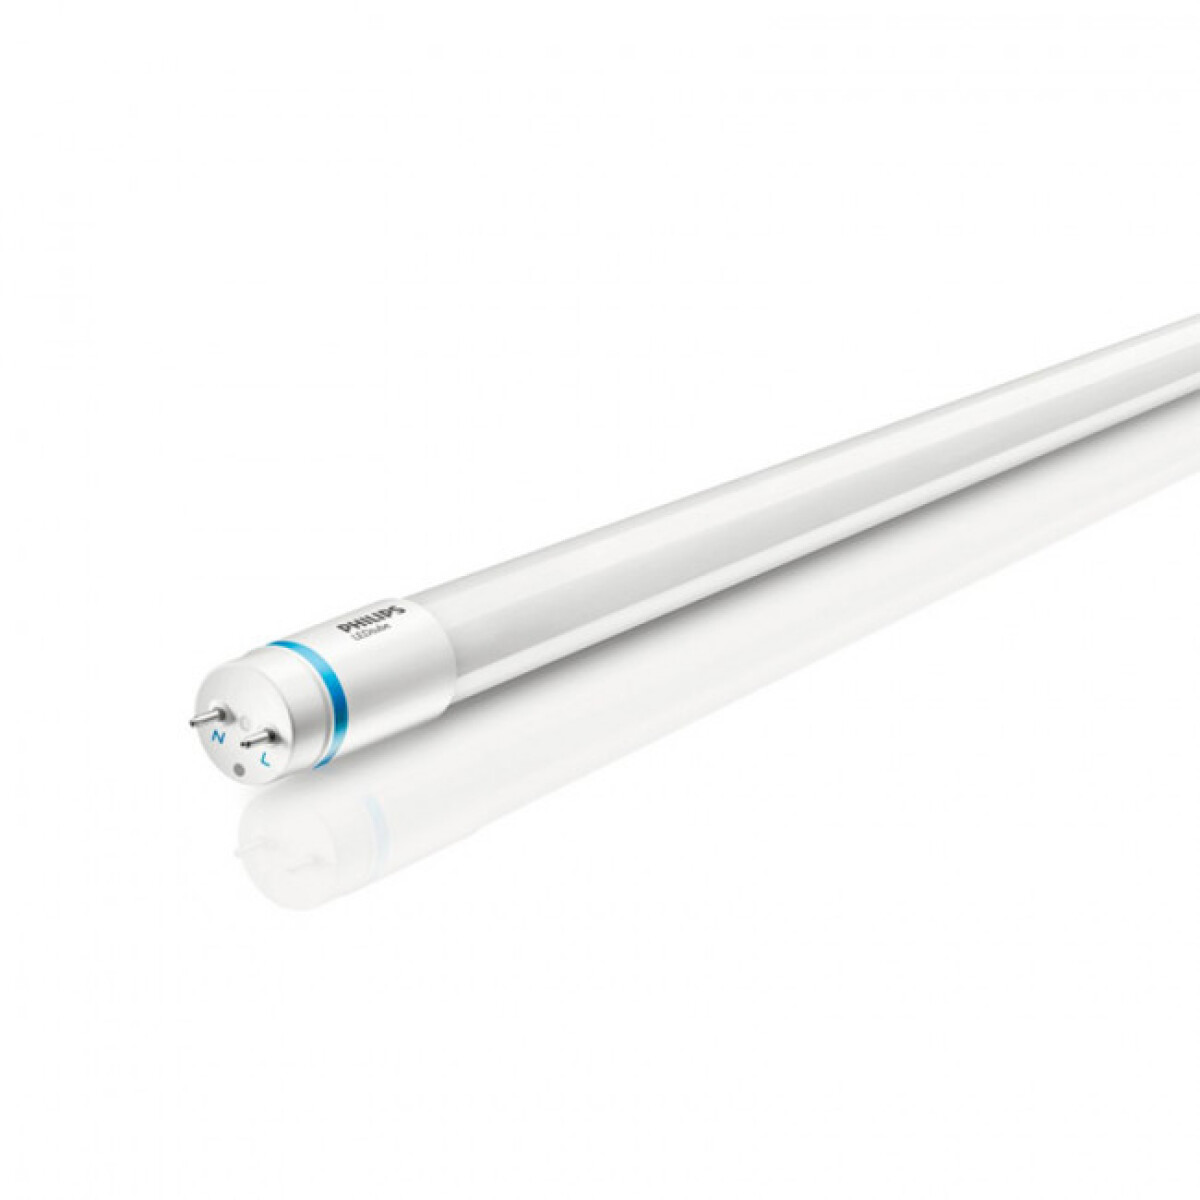 Tubo LED T8 8/9 watt 60 cmt opal frio chiaro 